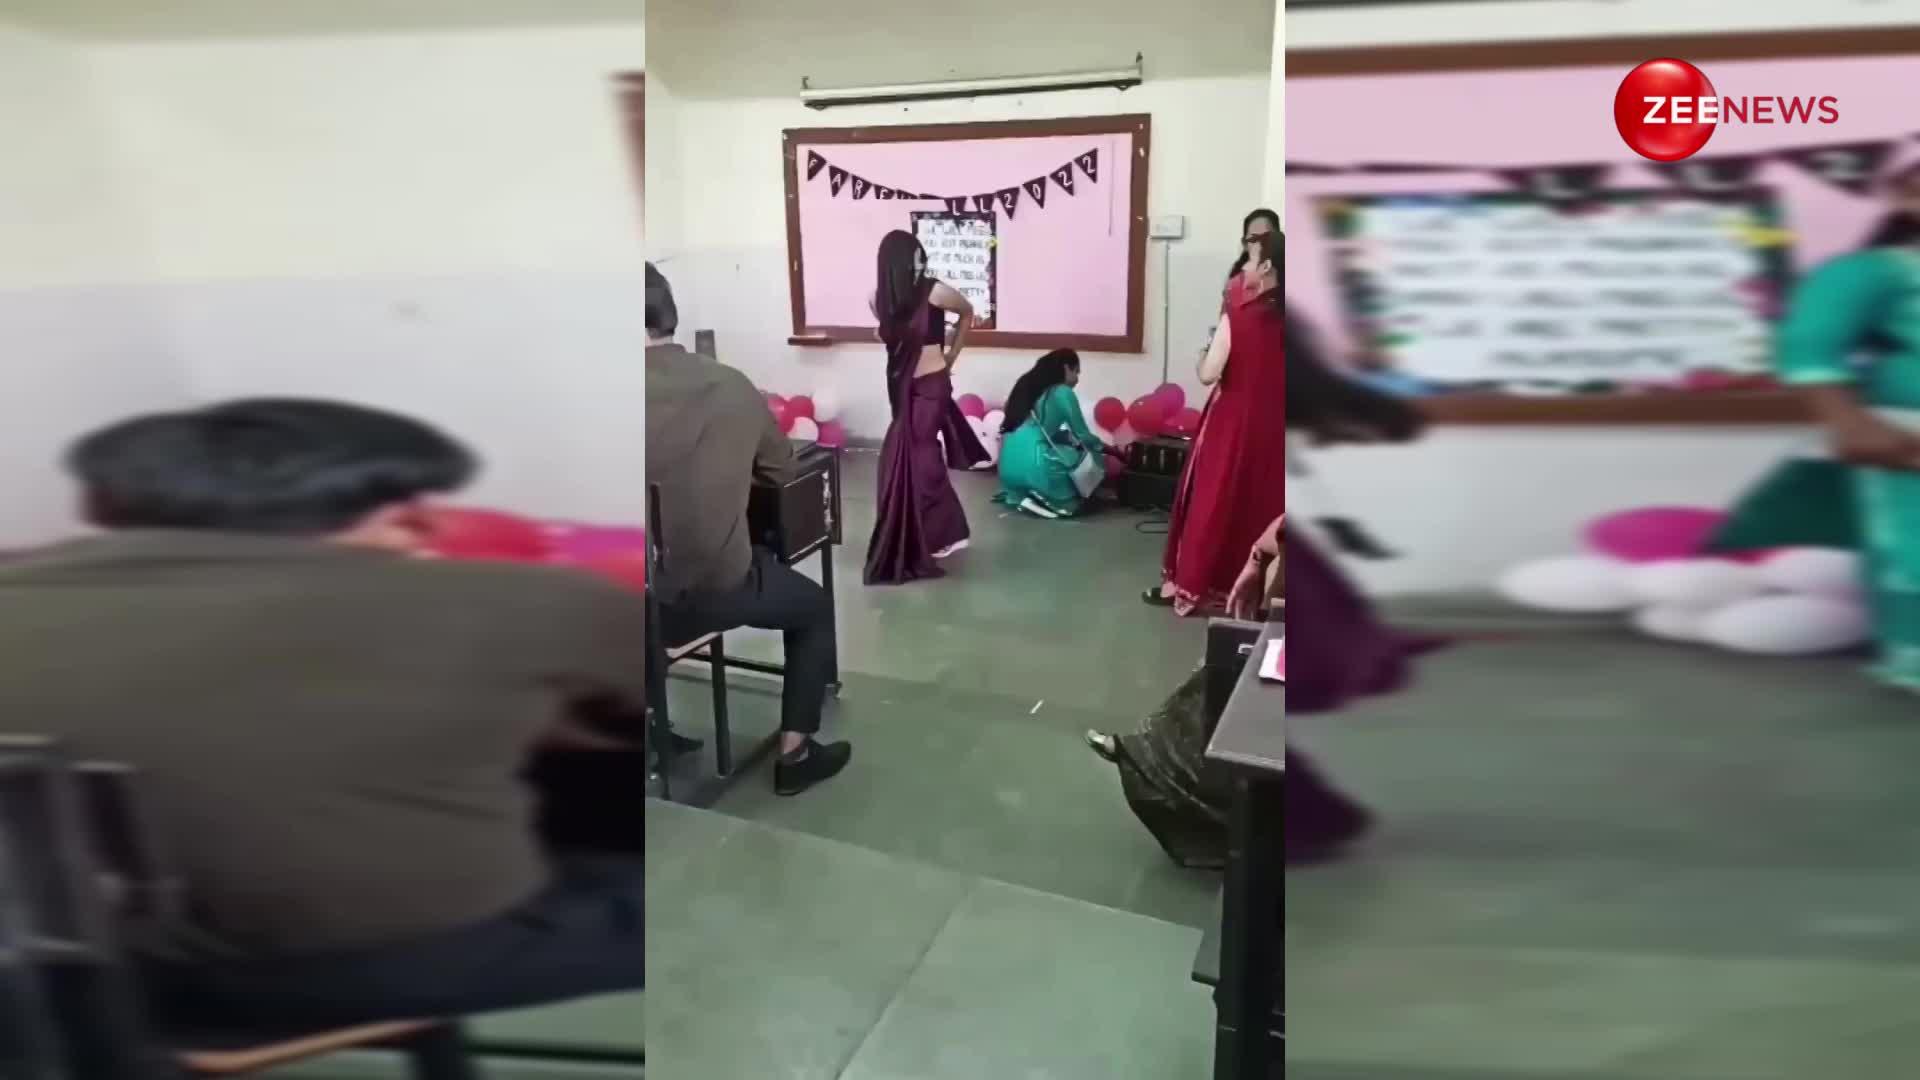 कॉलेज की लड़की ने 'कुसु कुसु' गाने पर किया ऐसा हॉट डांस, देख हिल गया लोगों का दिमाग; एक्सप्रेशन में Nora Fatehi को दे रही है मात